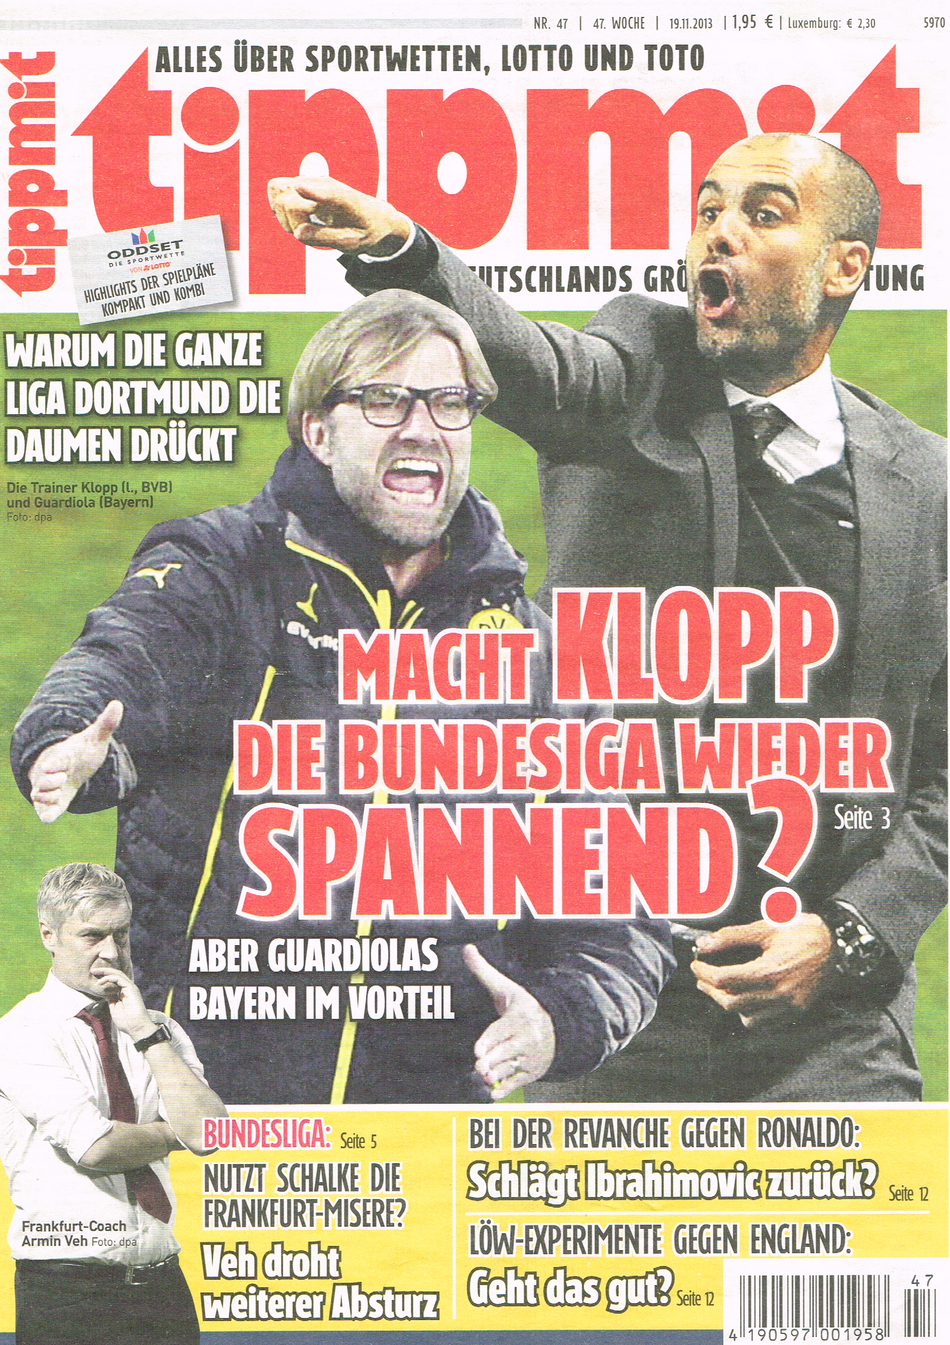 Titelbild der "tippmit" 47/2013 mit den Trainern Jürgen Klopp und Pep Guardiola 